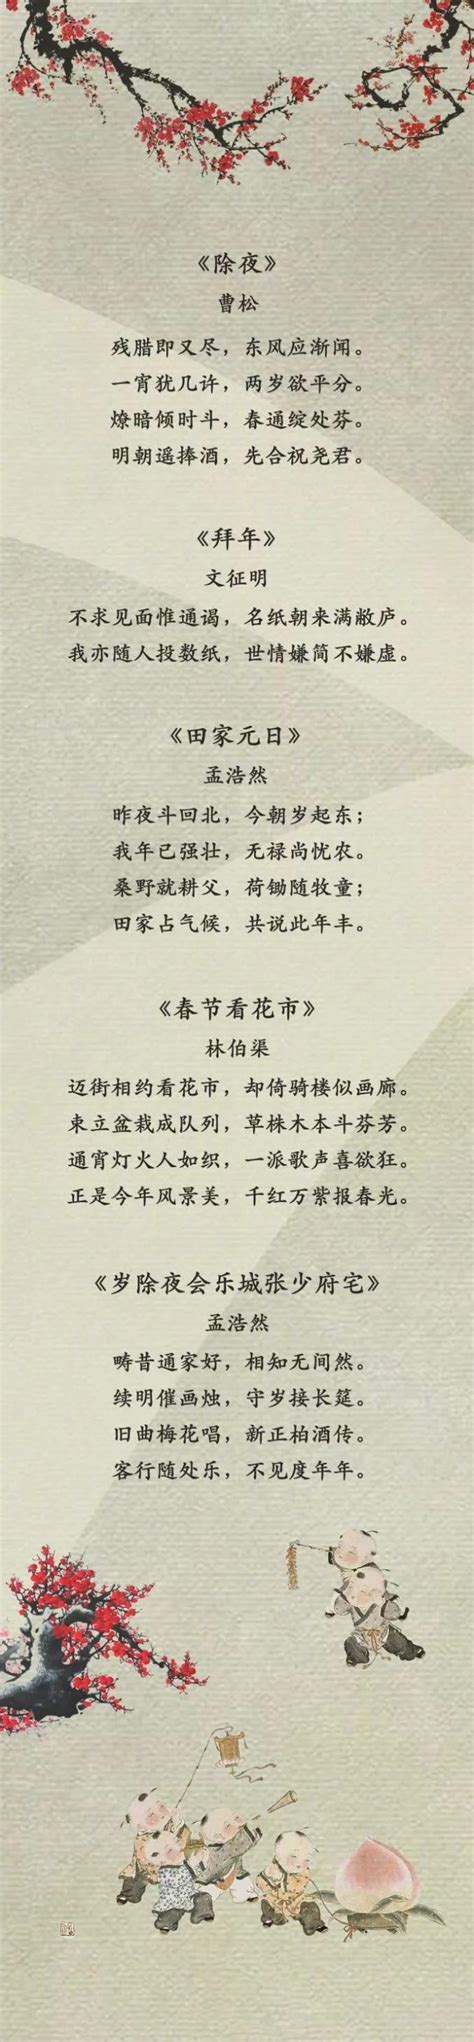 中国诗歌圈中的好诗